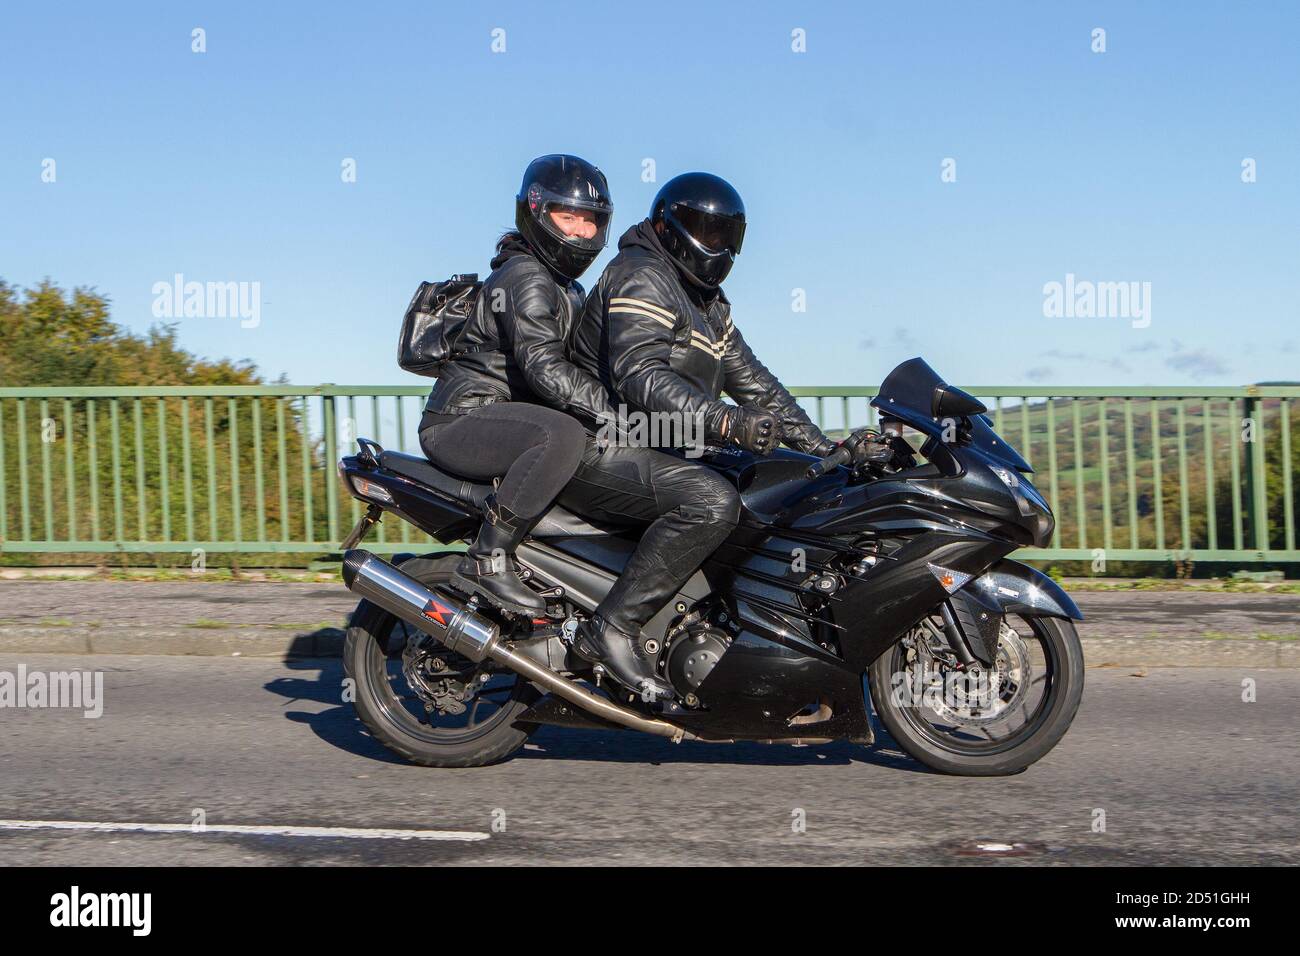 Ein kawasaki mit Sozius Motorrad Fahrer; zwei Rädern Transport, Motorräder, Fahrzeug, Straßen, Motorräder, Radfahrer fahren in Chorley, Großbritannien Stockfoto